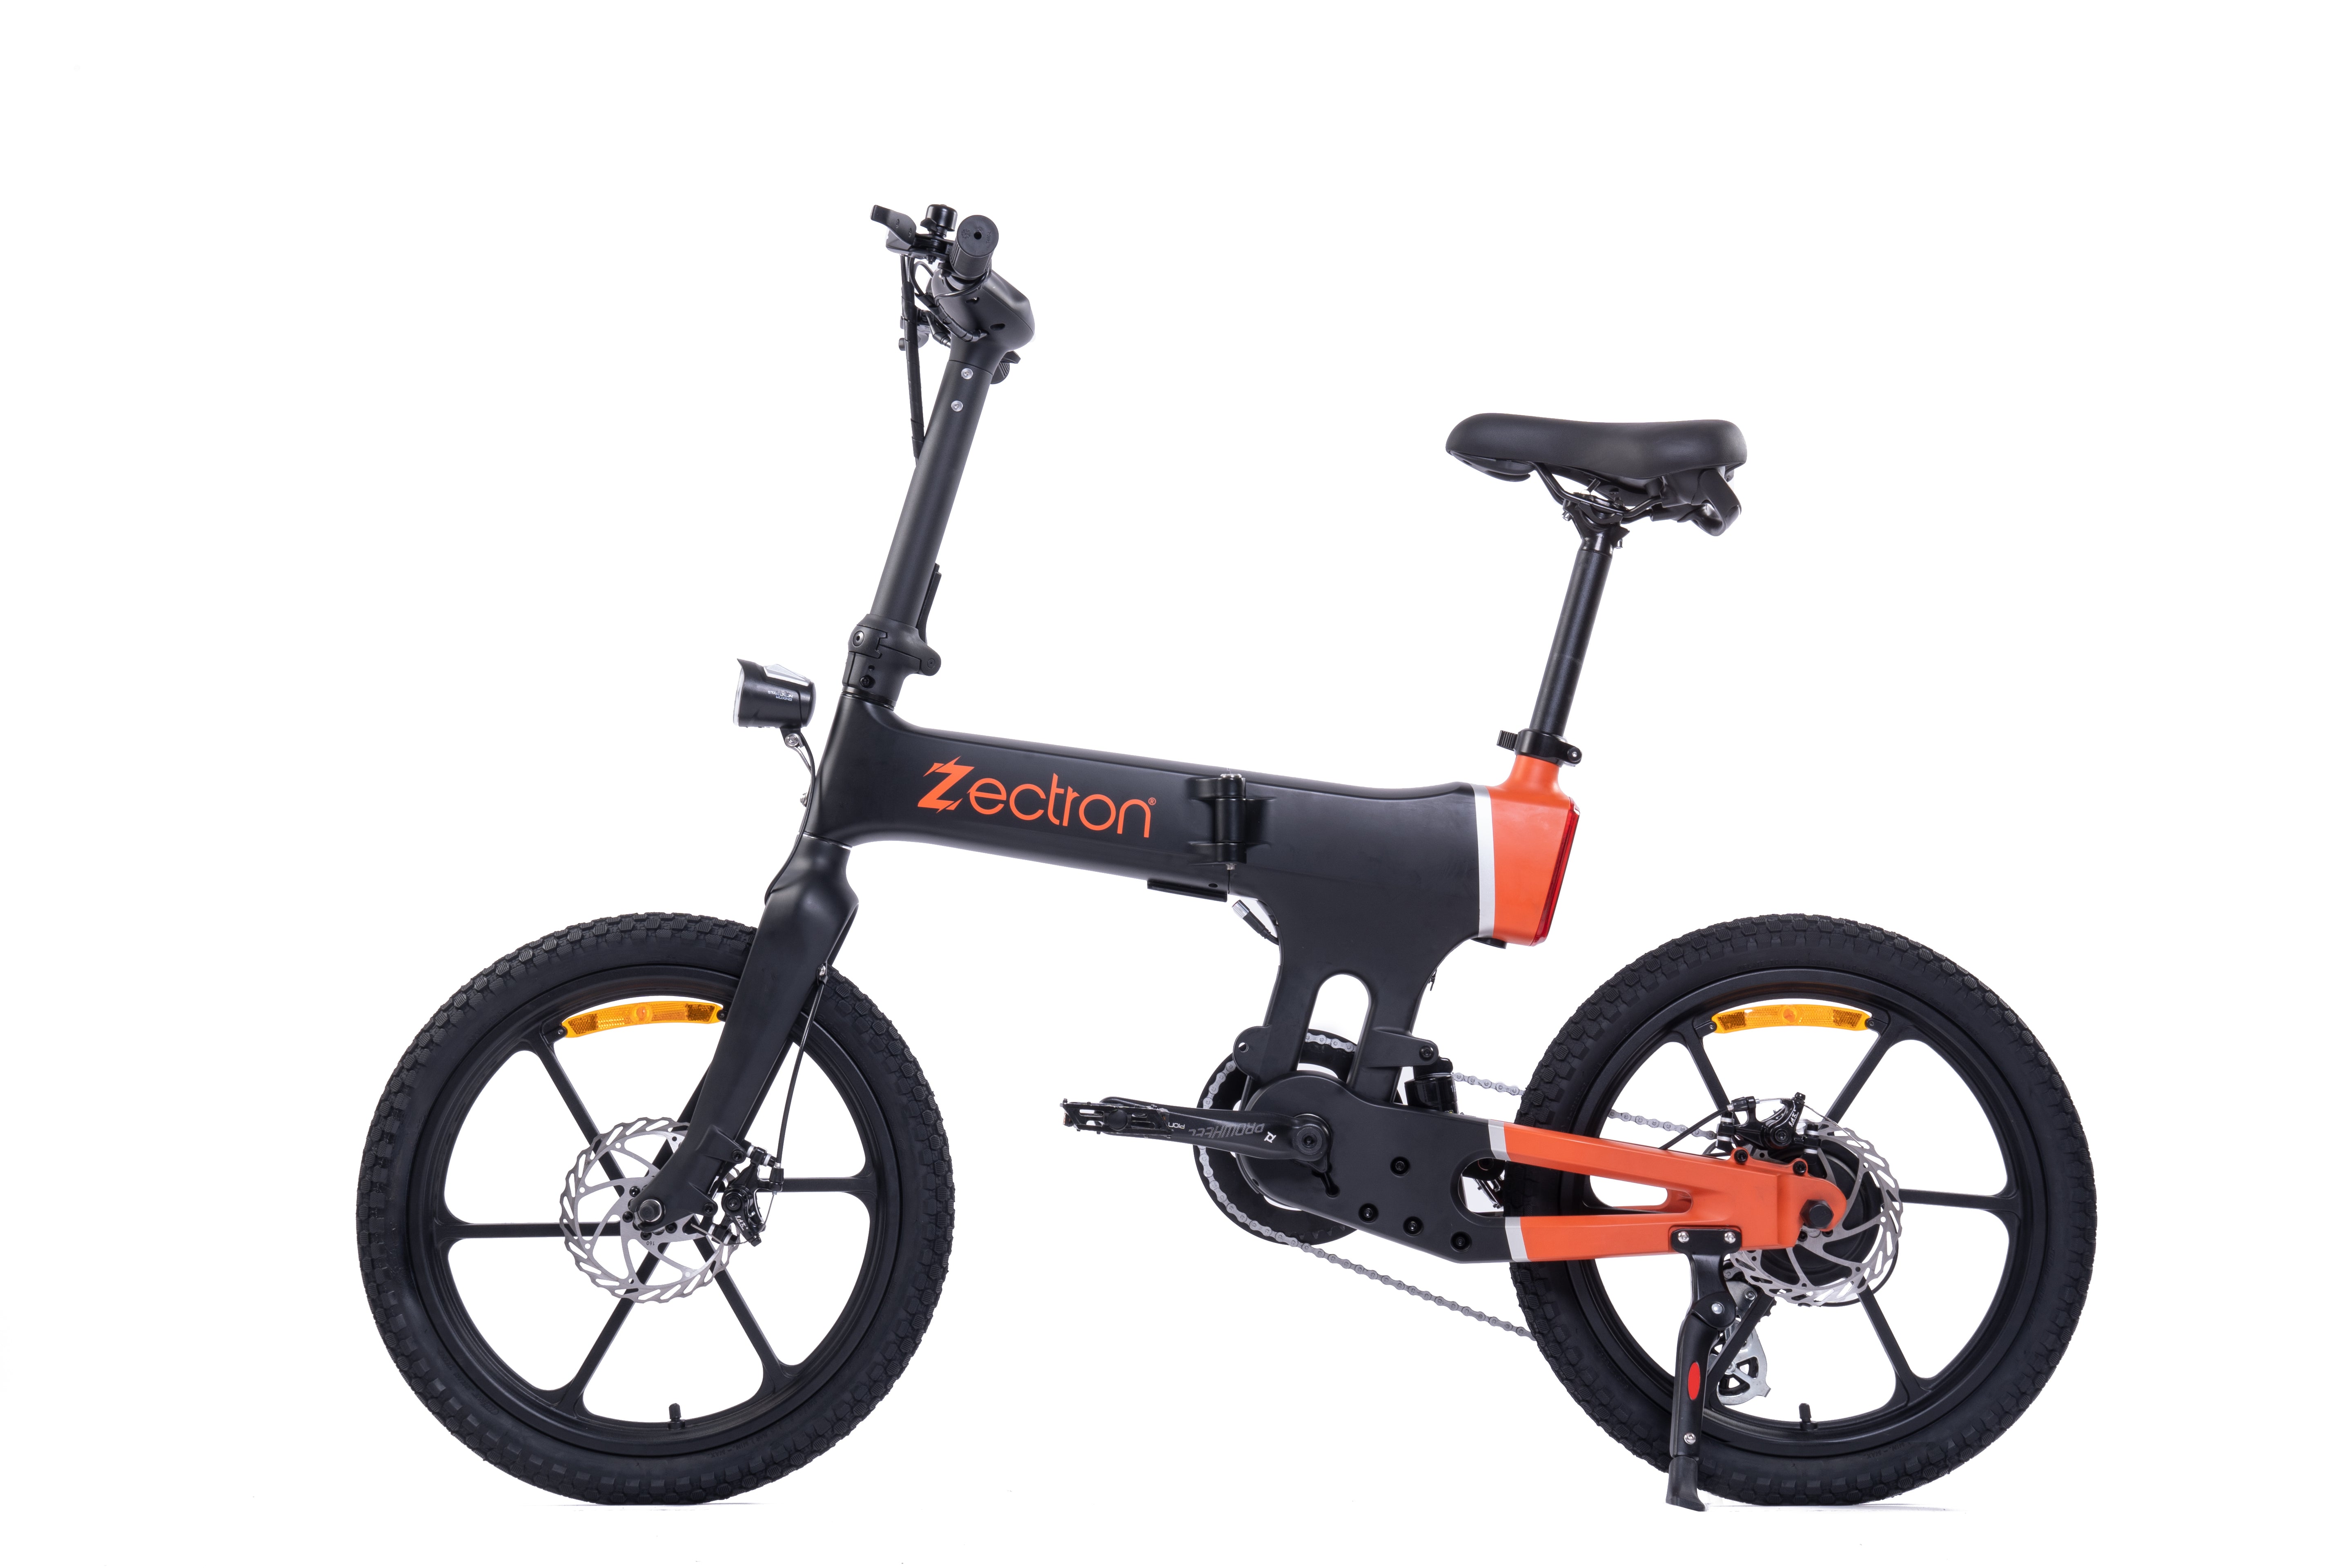 Zectron E-bike